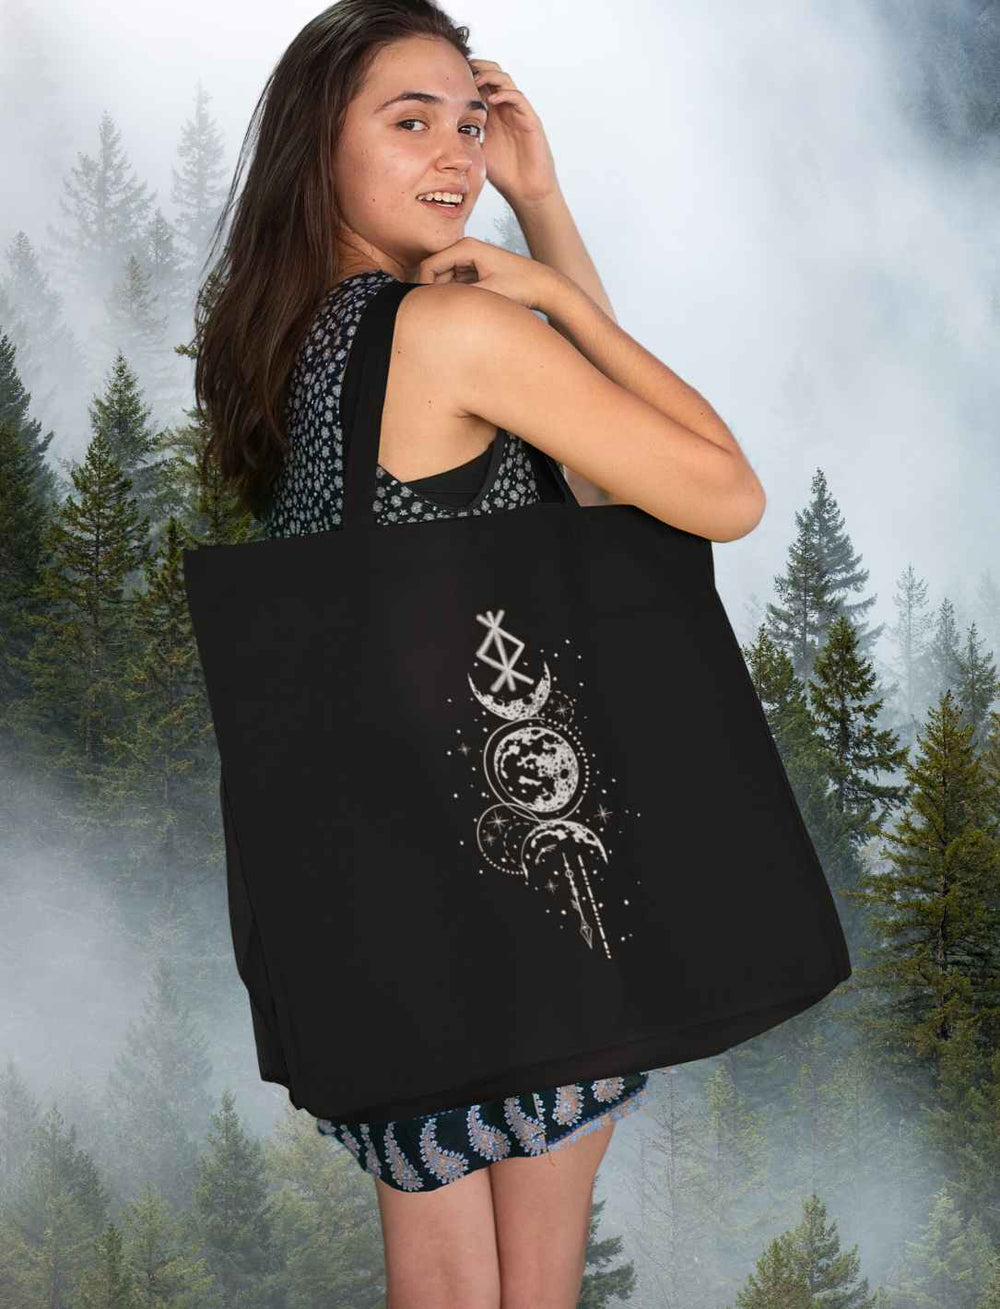 Frau trägt schwarze Rune des Mondschein Wächters Shopping Bag von Runental.de